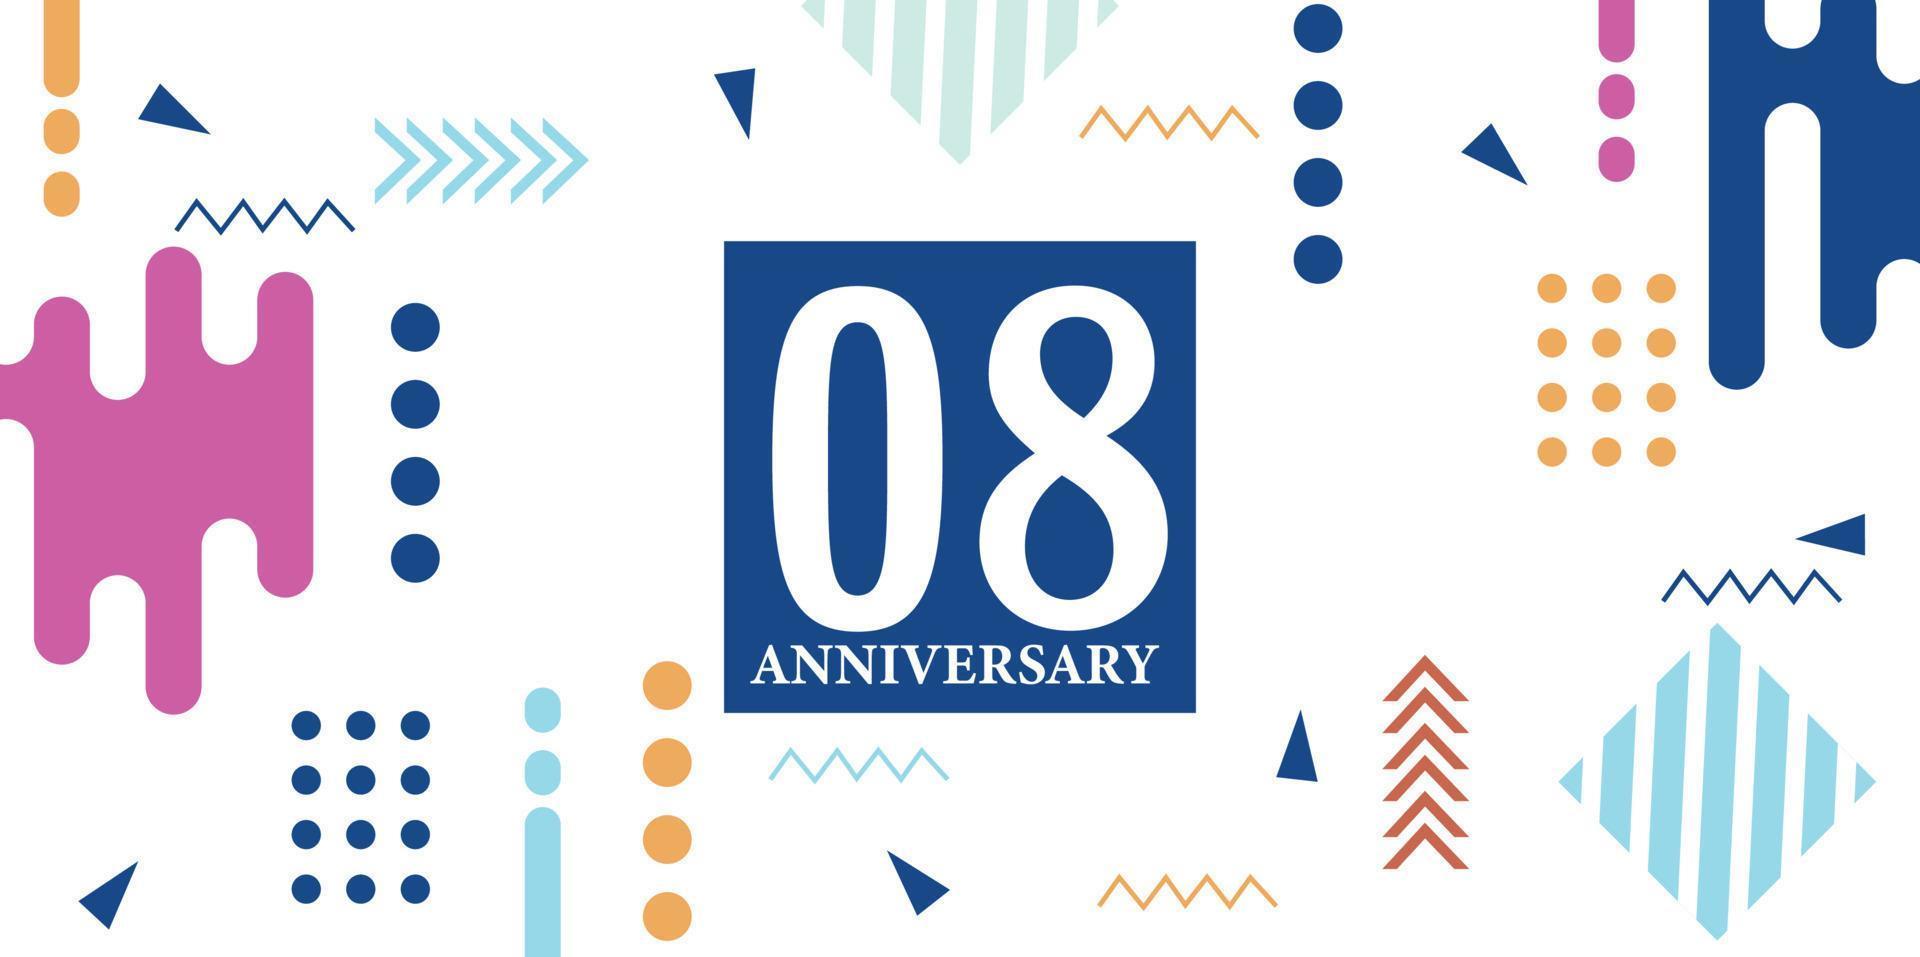 08 Jahre Jahrestag Feier Logo Weiß Zahlen Schriftart im Blau gestalten mit bunt abstrakt Design auf Weiß Hintergrund Vektor Illustration